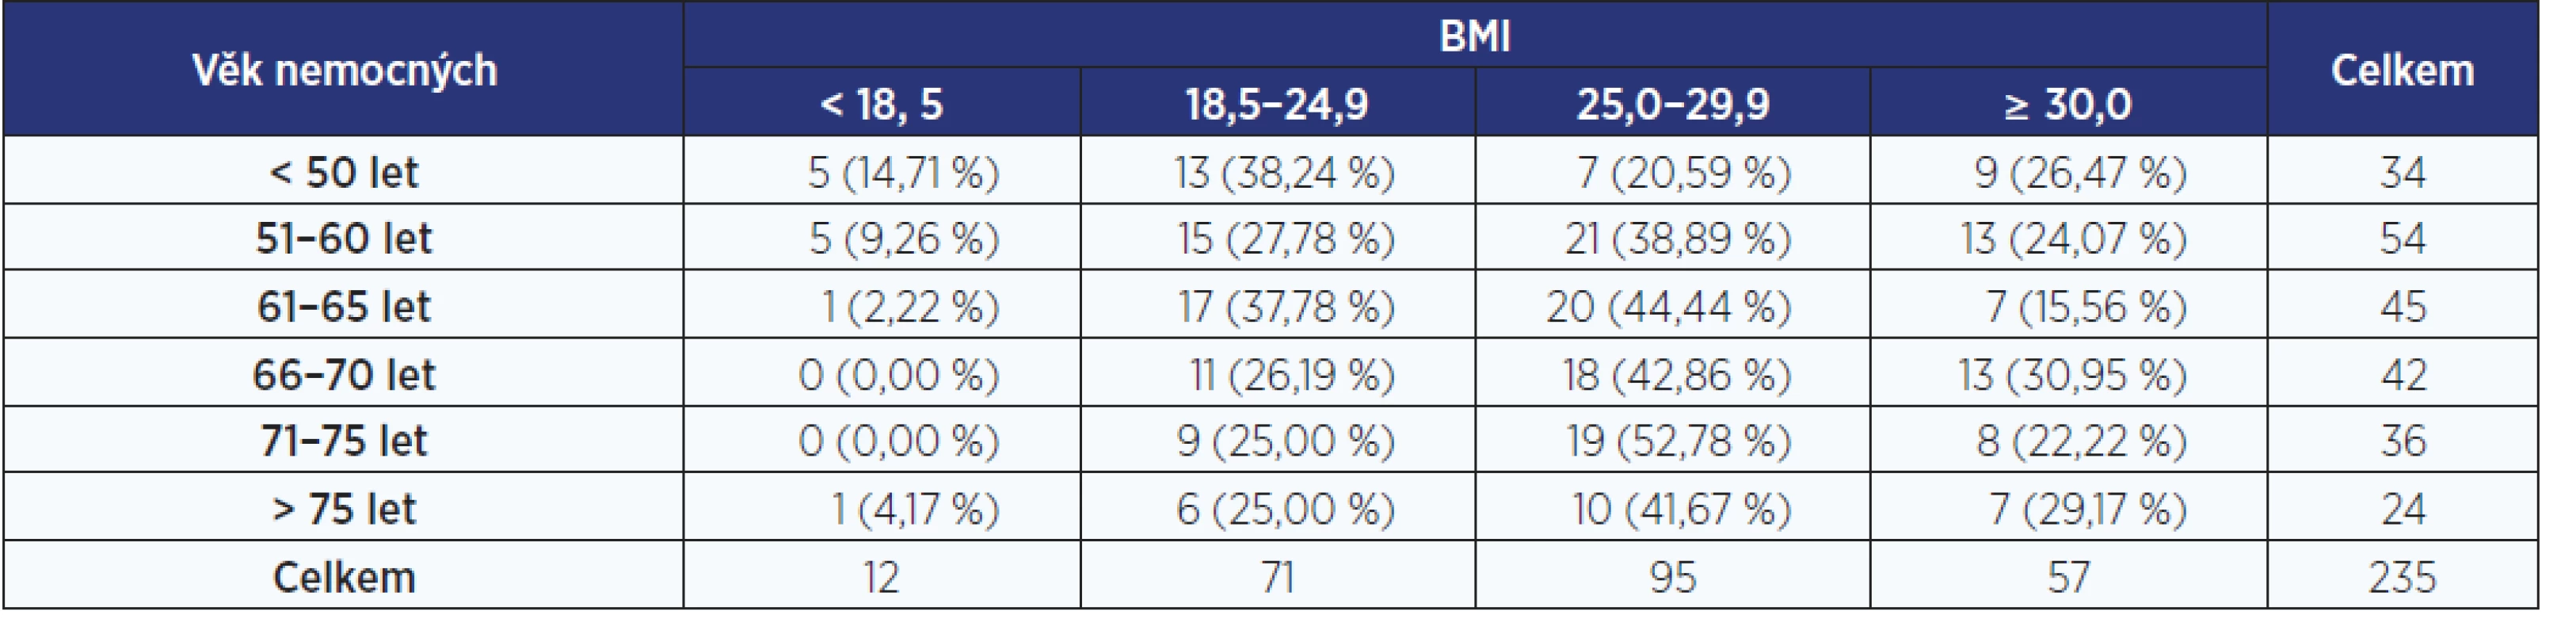 Podrobné rozložení souboru nemocných s onemocněním pankreatu dle BMI a věku